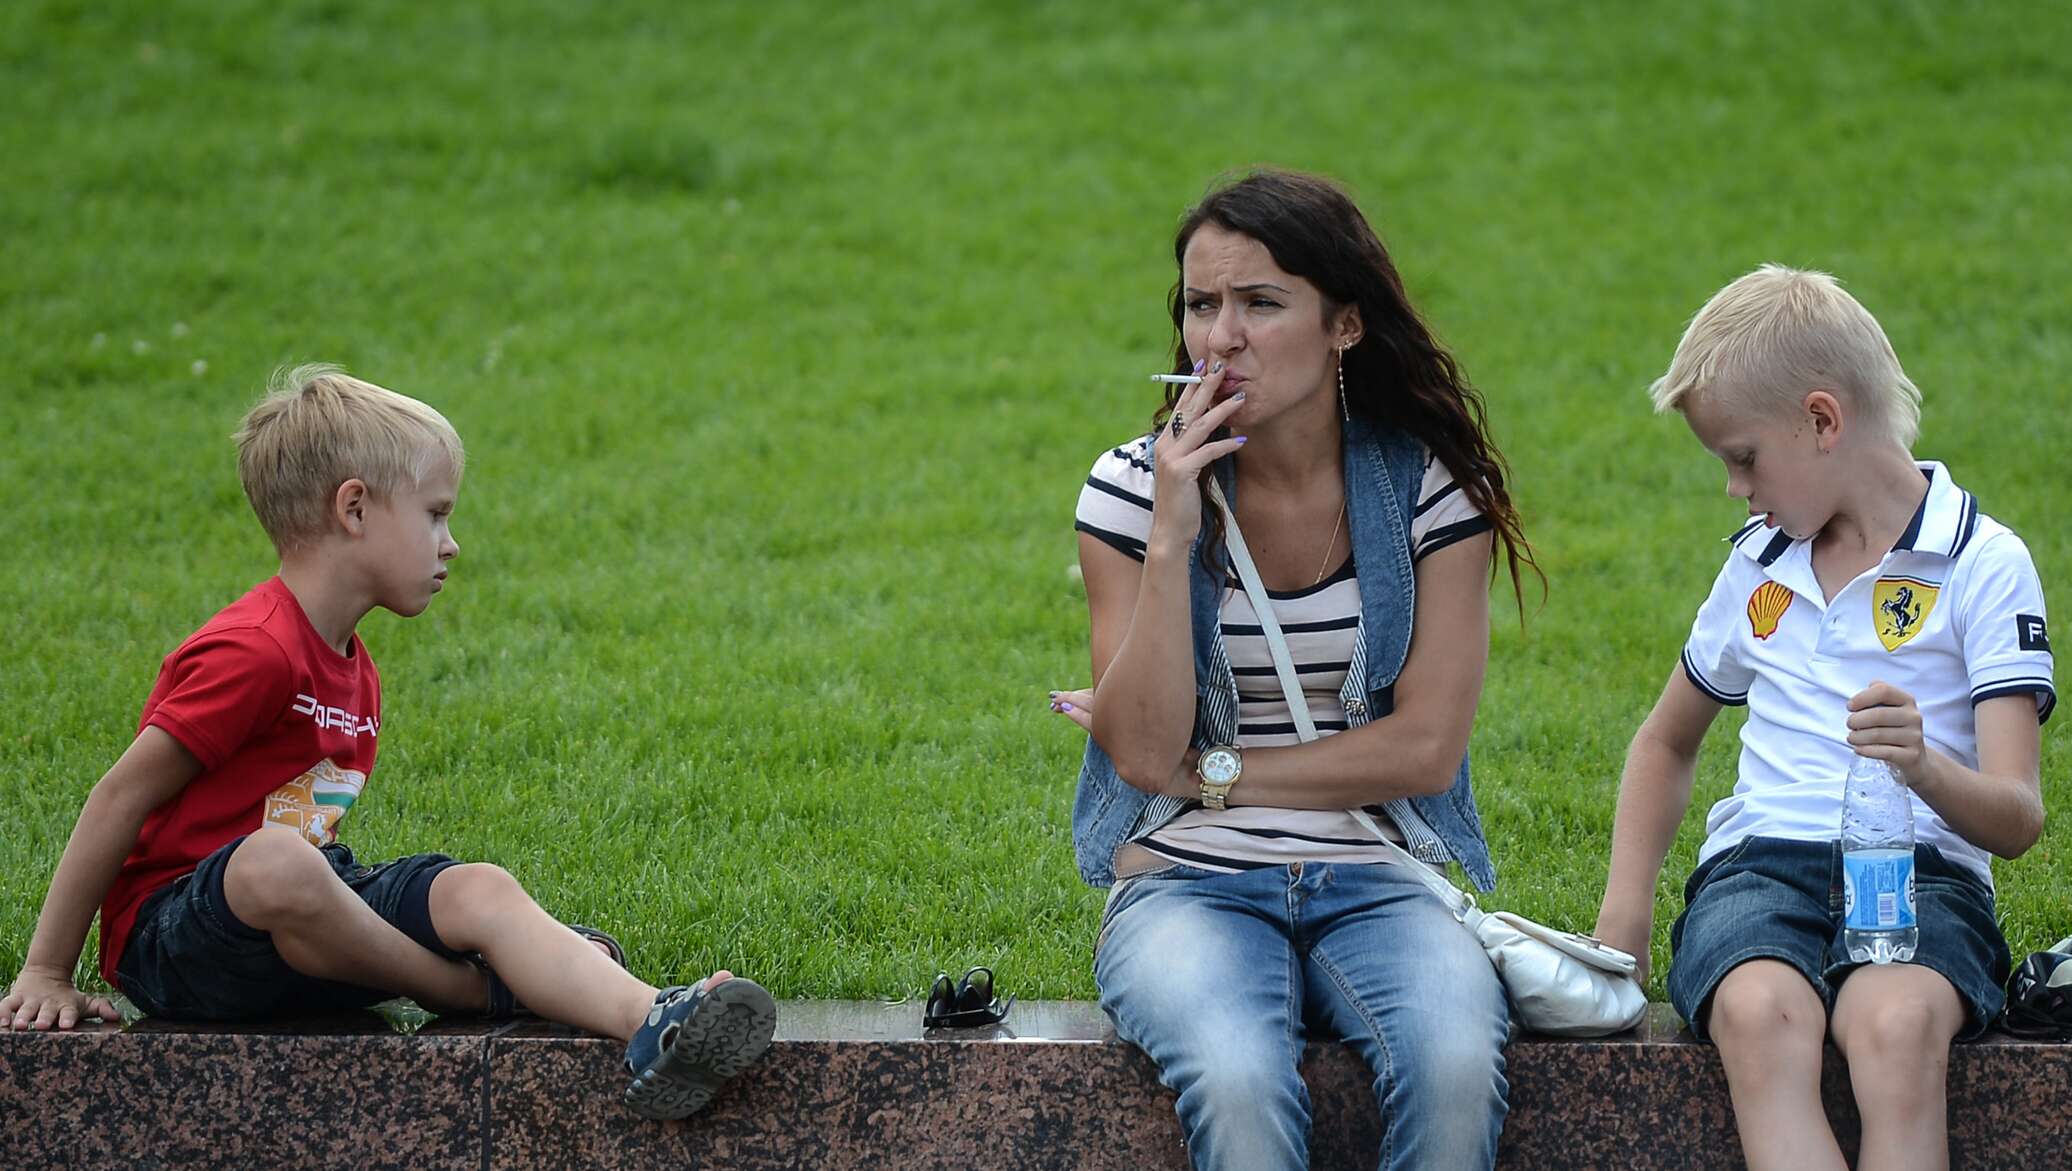 Курящие мамы и дочки. Курящая мама с ребенком. Курение рядом с детьми. Родители с детьми на детской площадке.